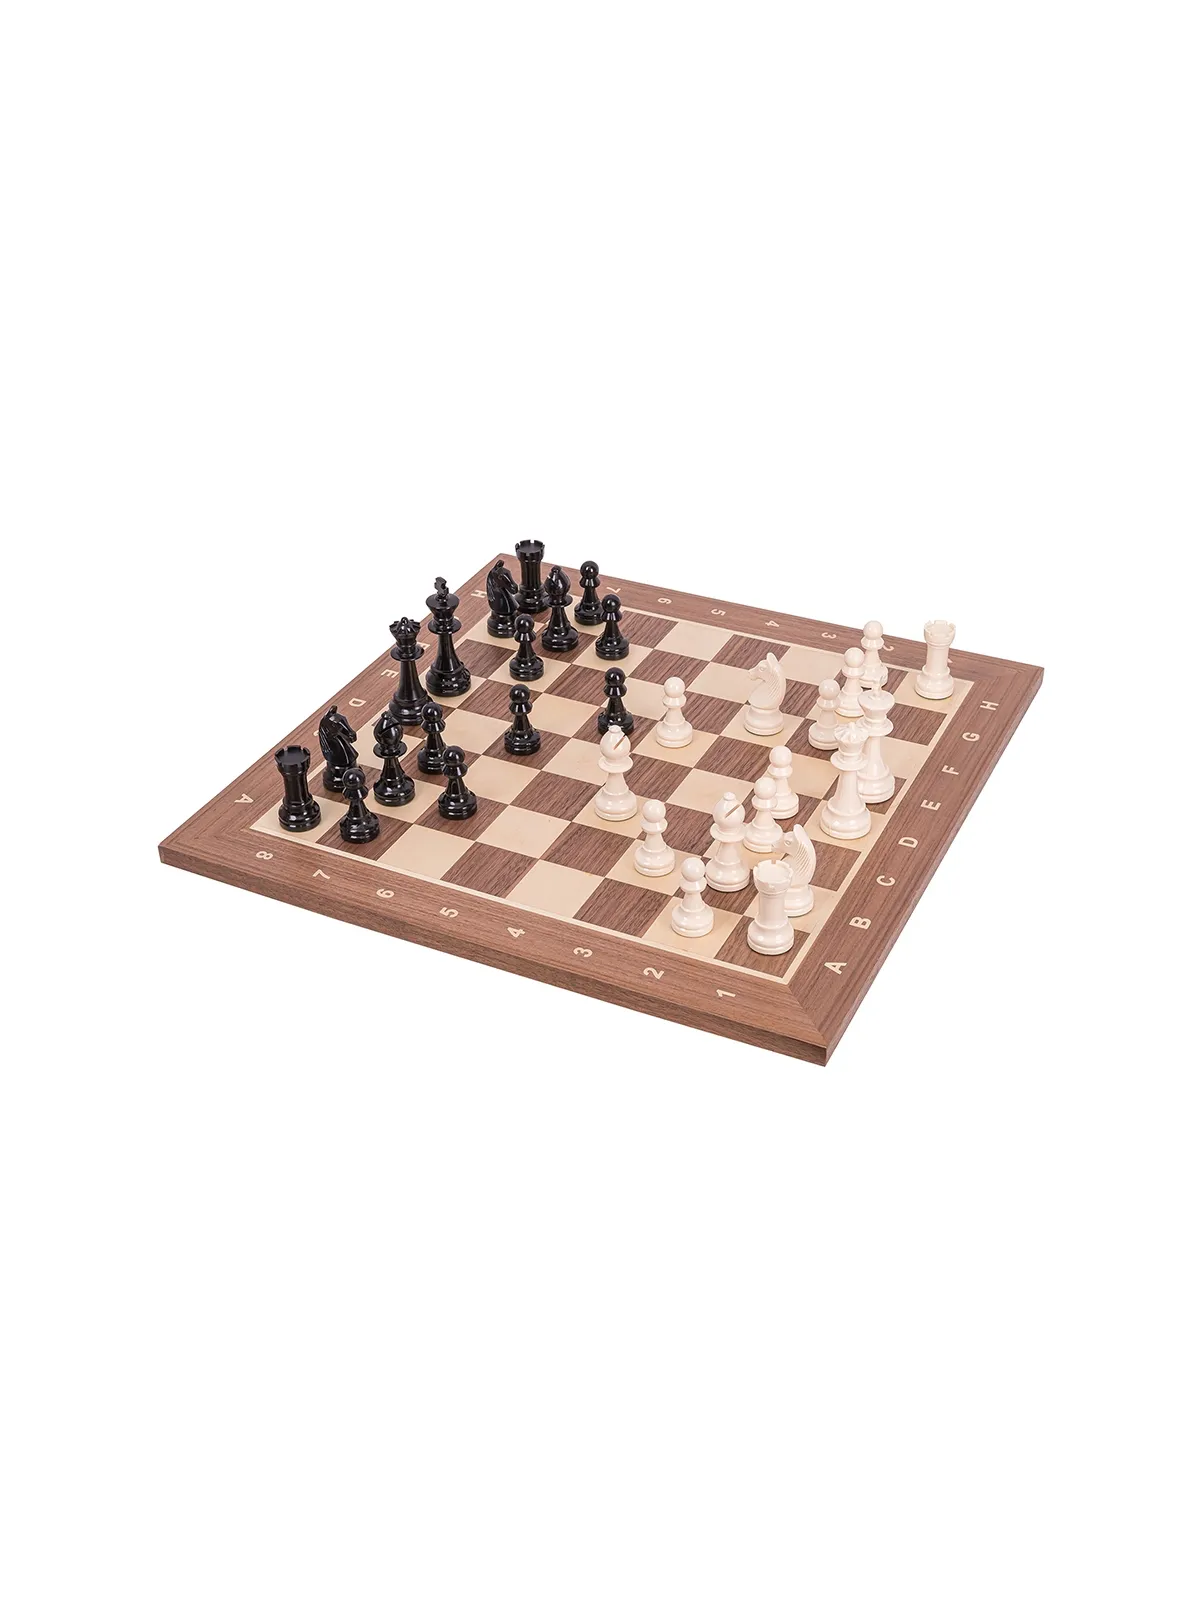 Profi Schach Set Nr 5 - Italien